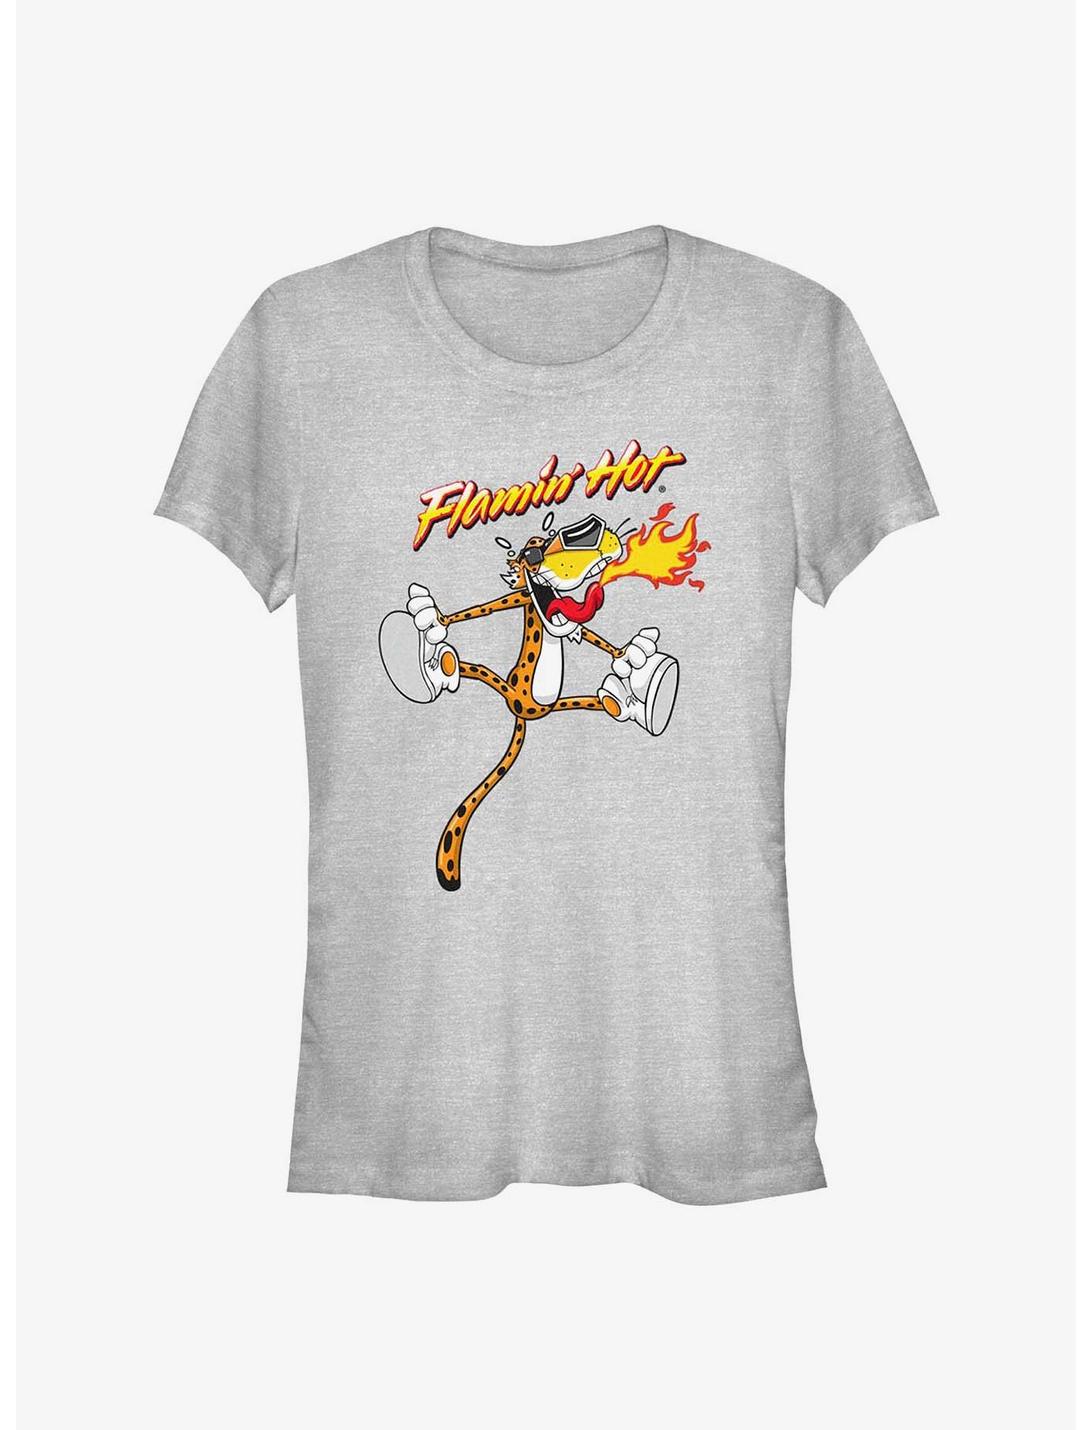 Cheetos Flamin Hot Jumping Chester Girls T-Shirt, ATH HTR, hi-res